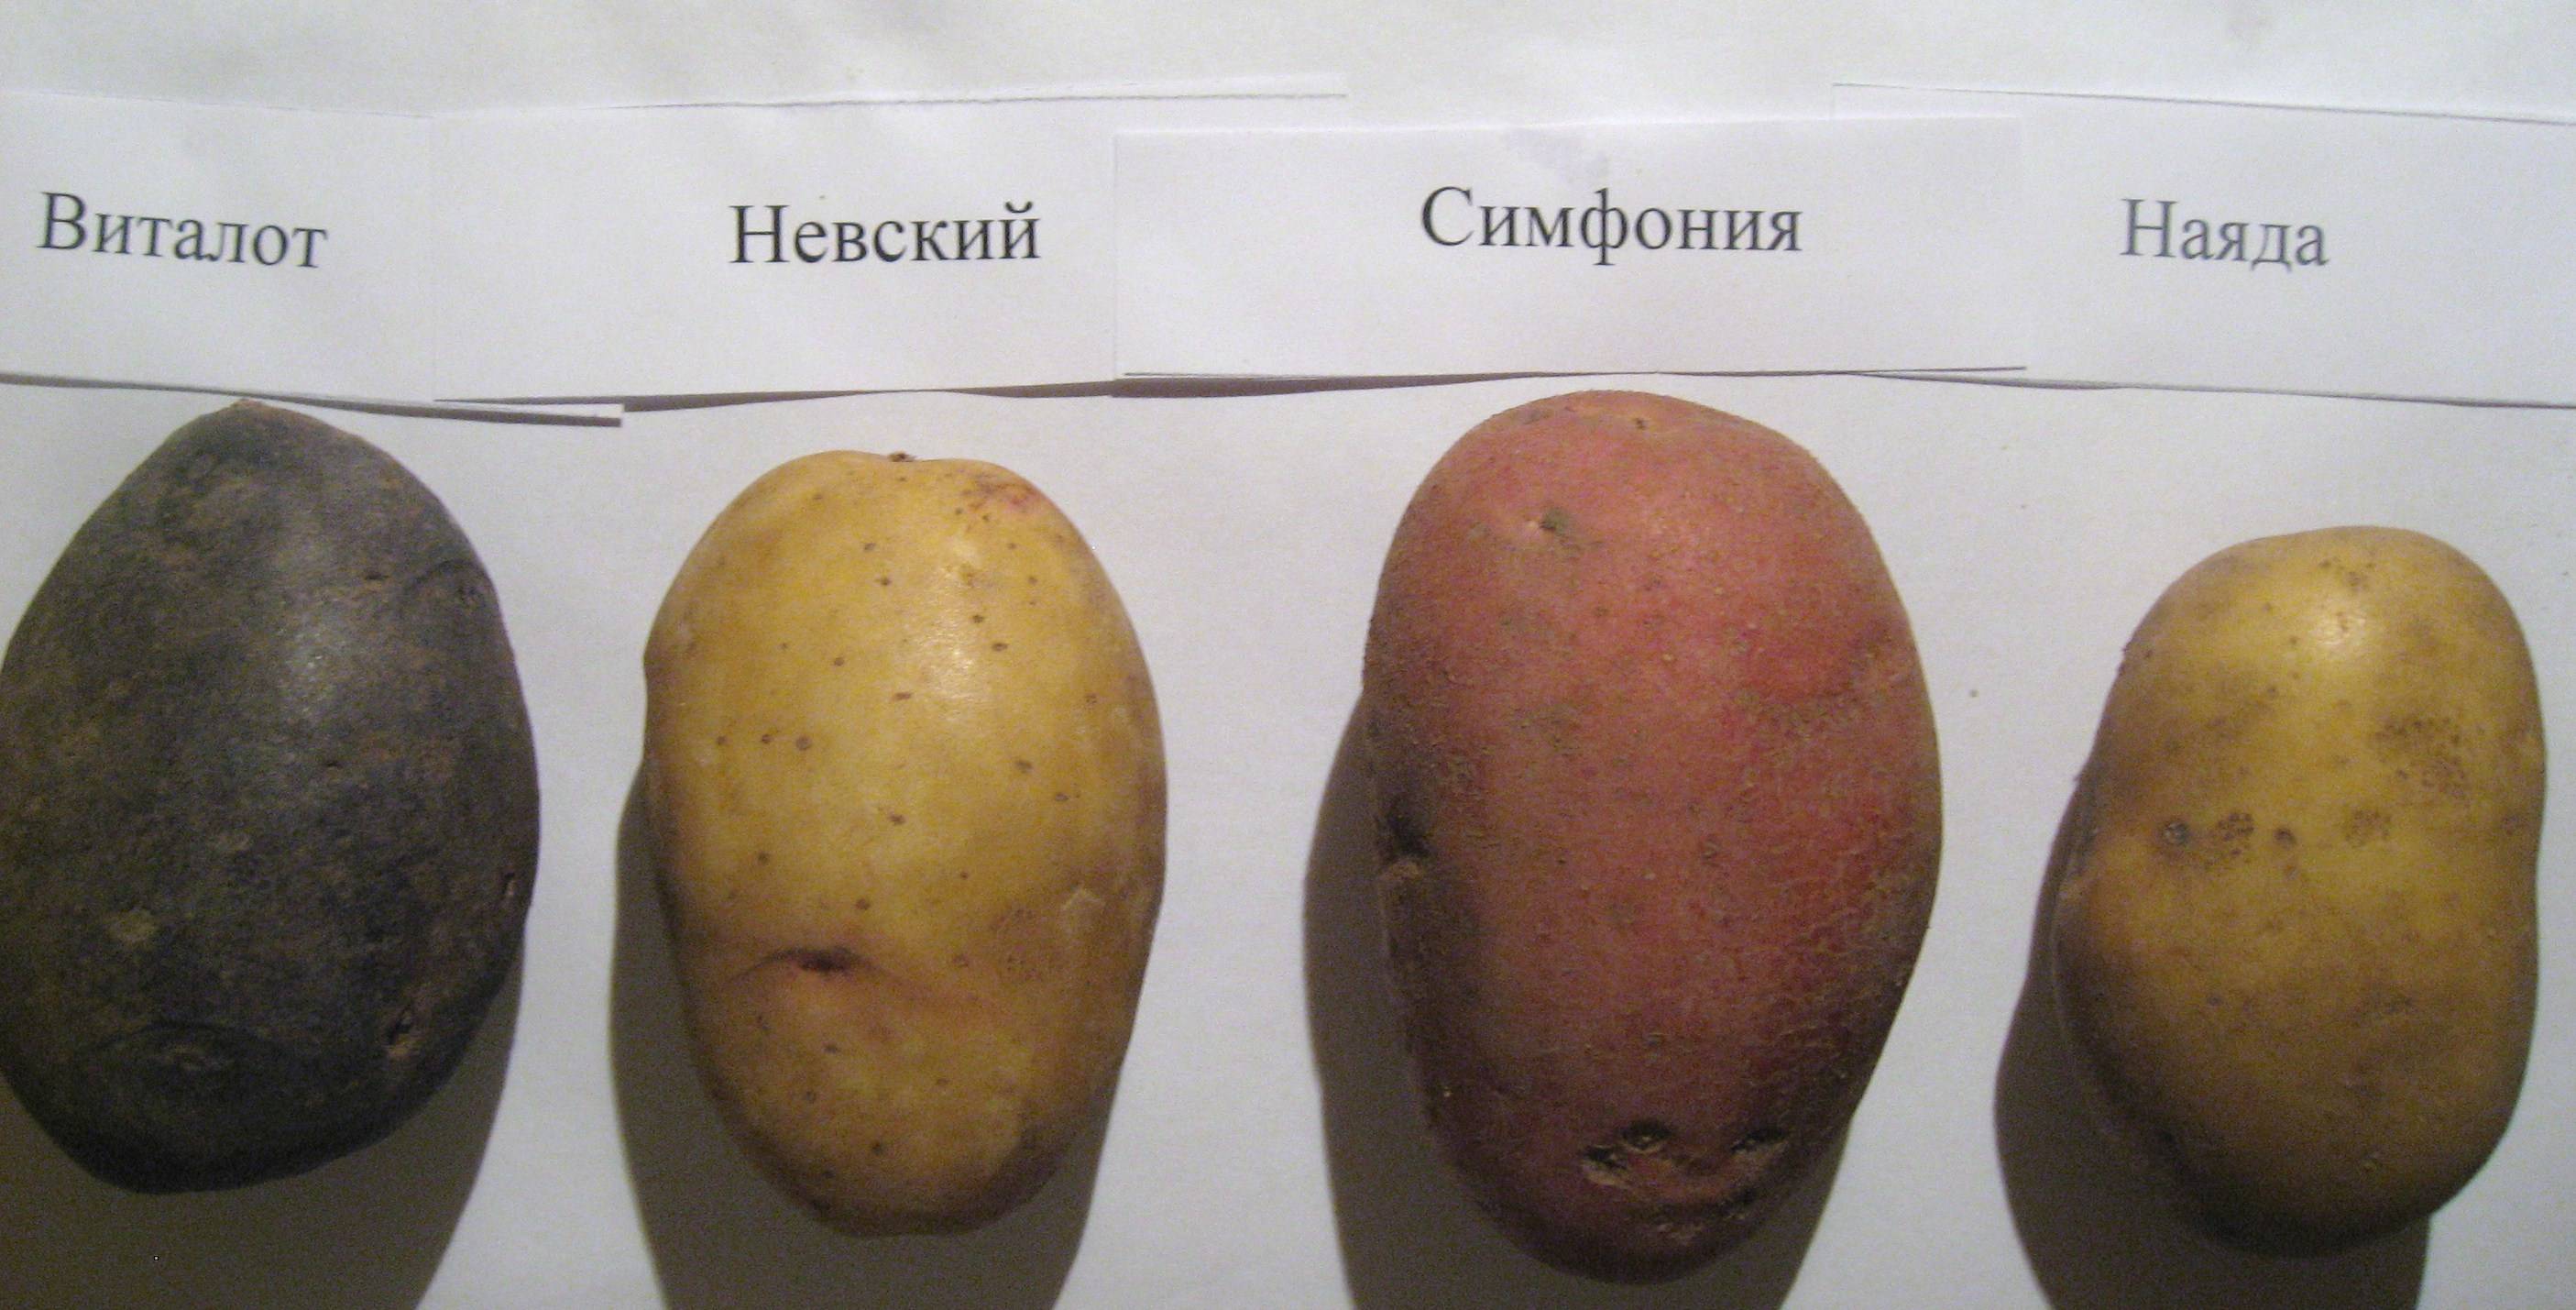 Картофель невский: описание сорта, фото, отзывы об урожайности и характеристика вкусовых качеств, подвид